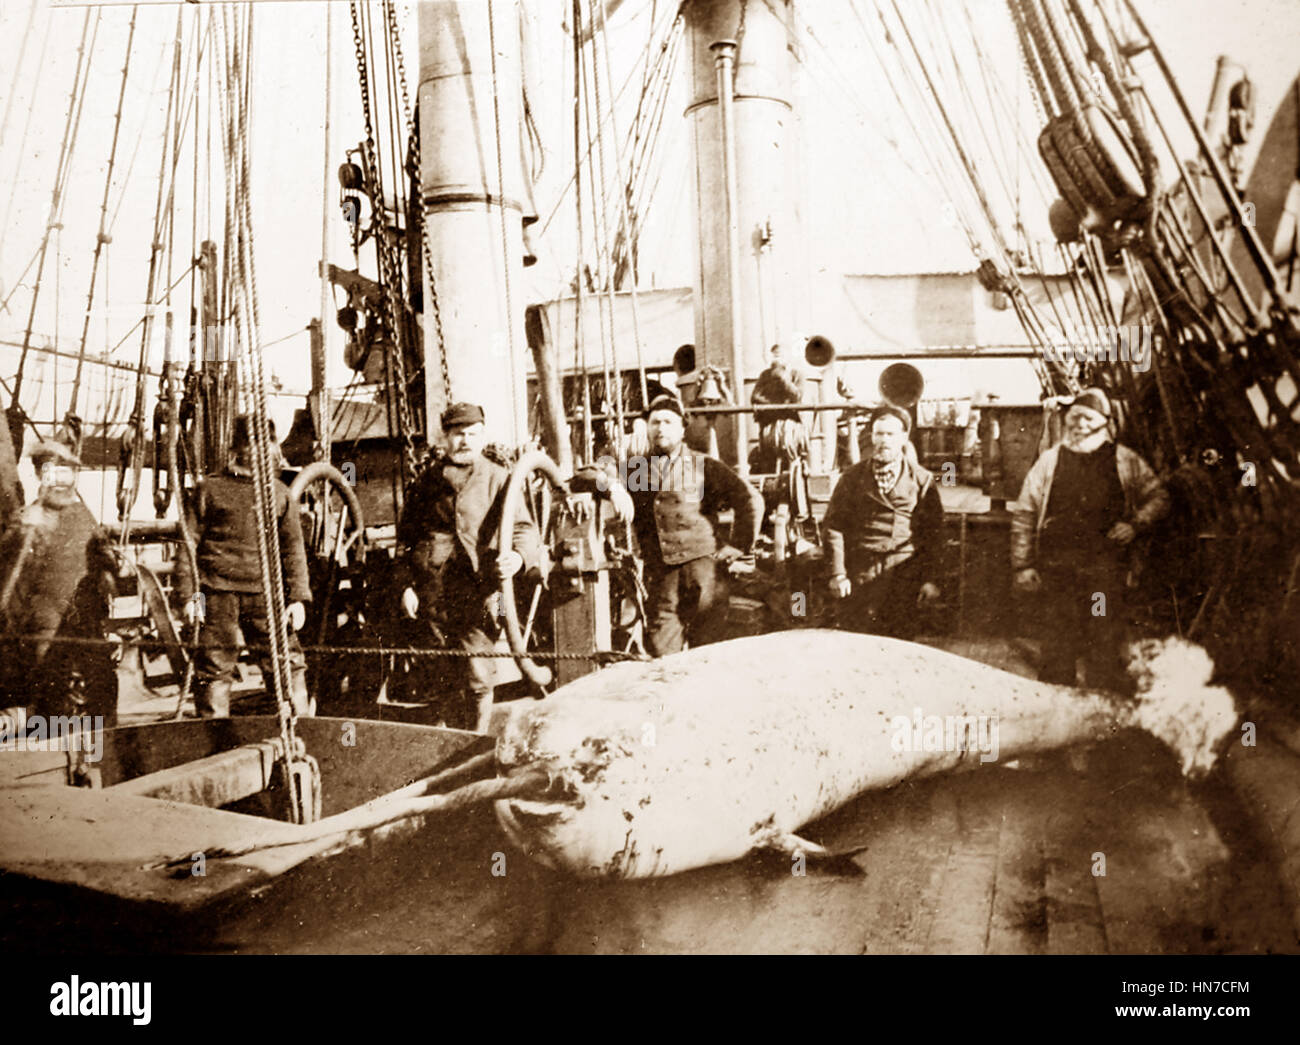 Walfangschiff in der Arktis - Crew mit Wal an Deck - viktorianische Periode Stockfoto